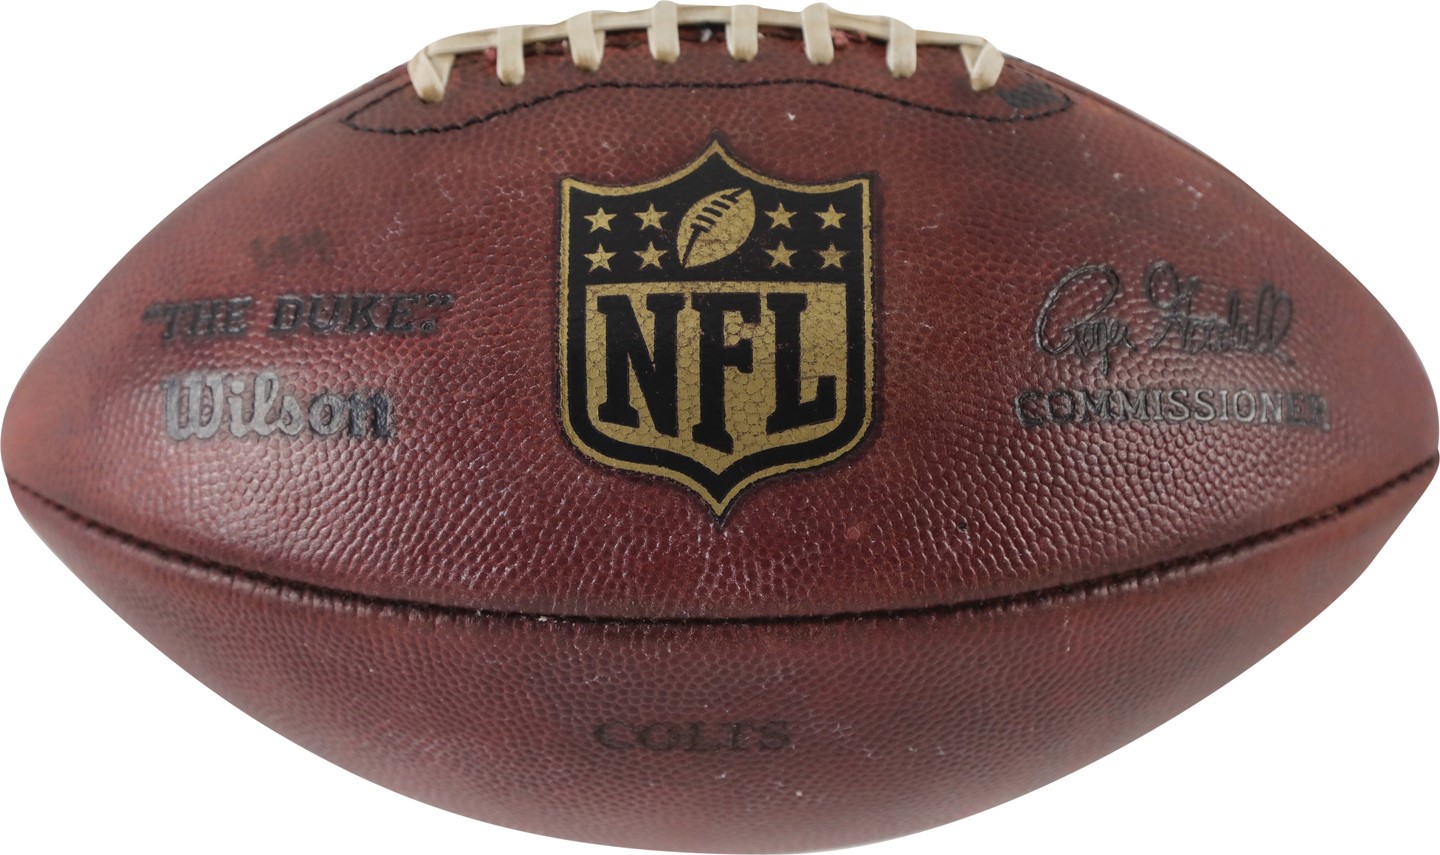 - "Deflategate" Game Used Football (NFL Referee Provenance)